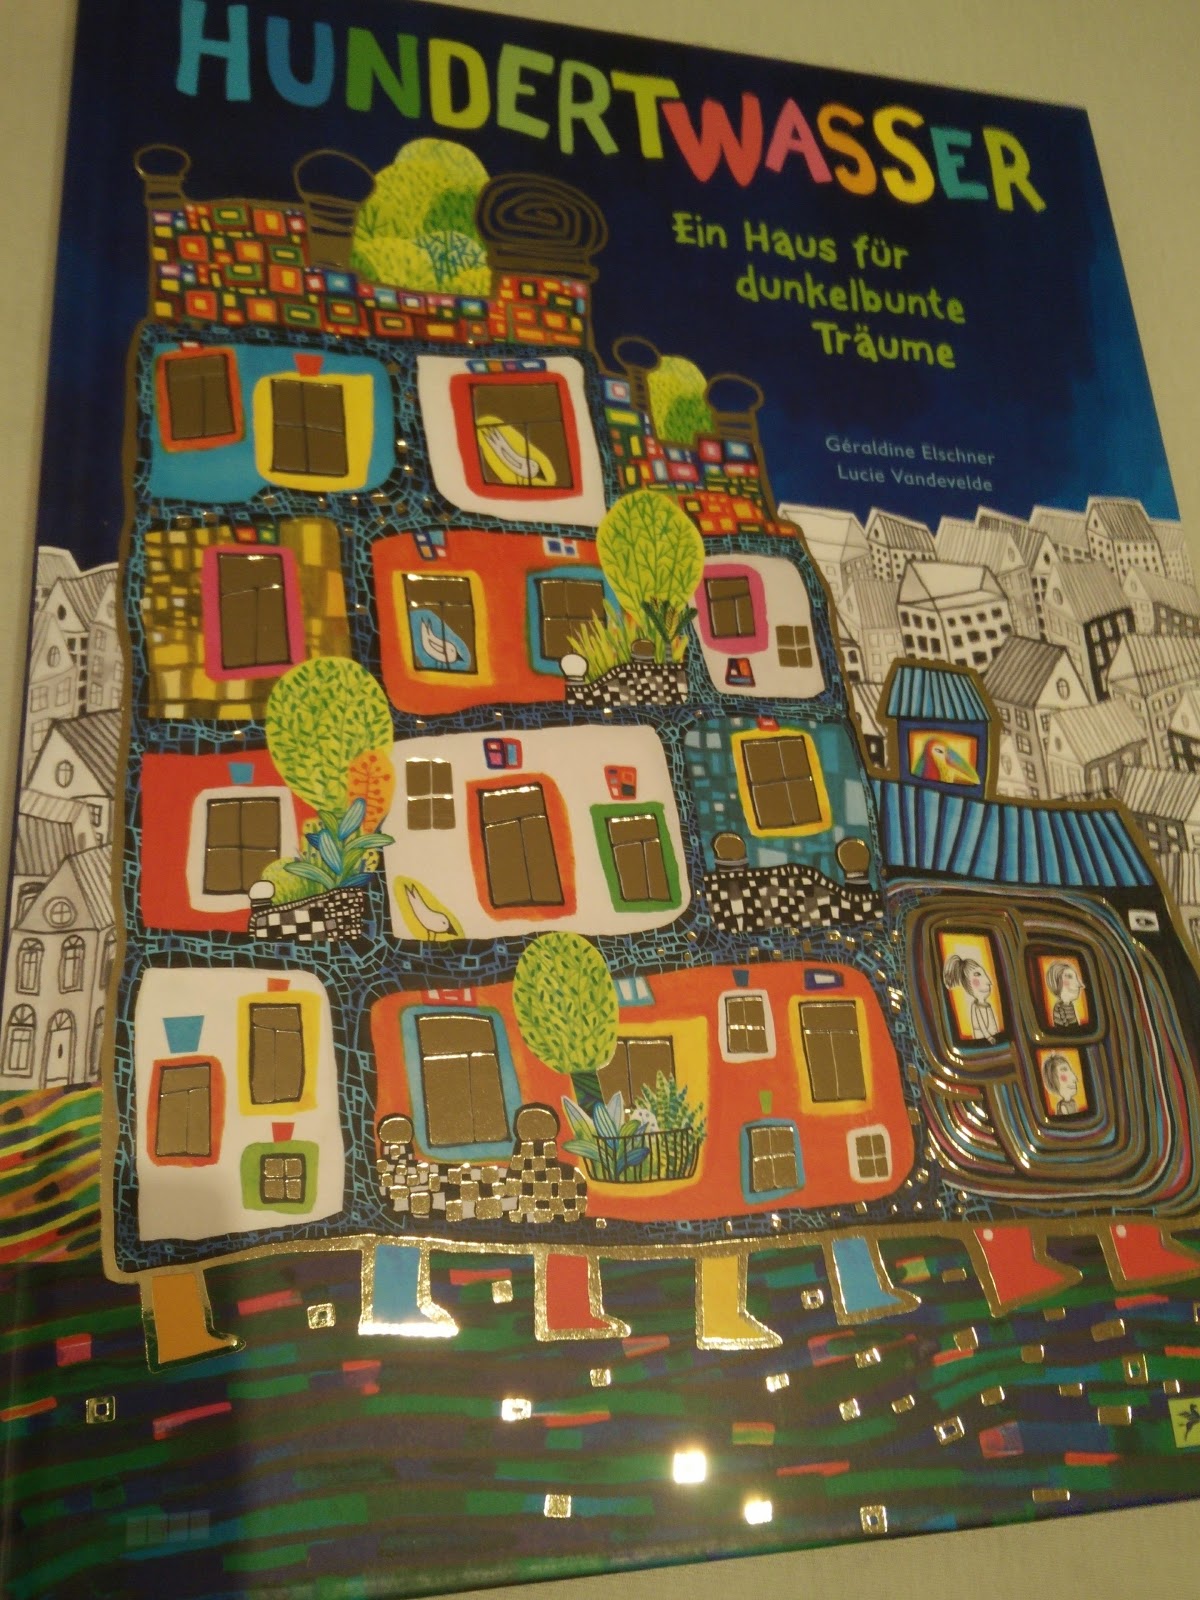 Sommerleses Bücherkiste: Hundertwasser: Ein Haus für dunkelbunte Träume -  Géraldine Elschner